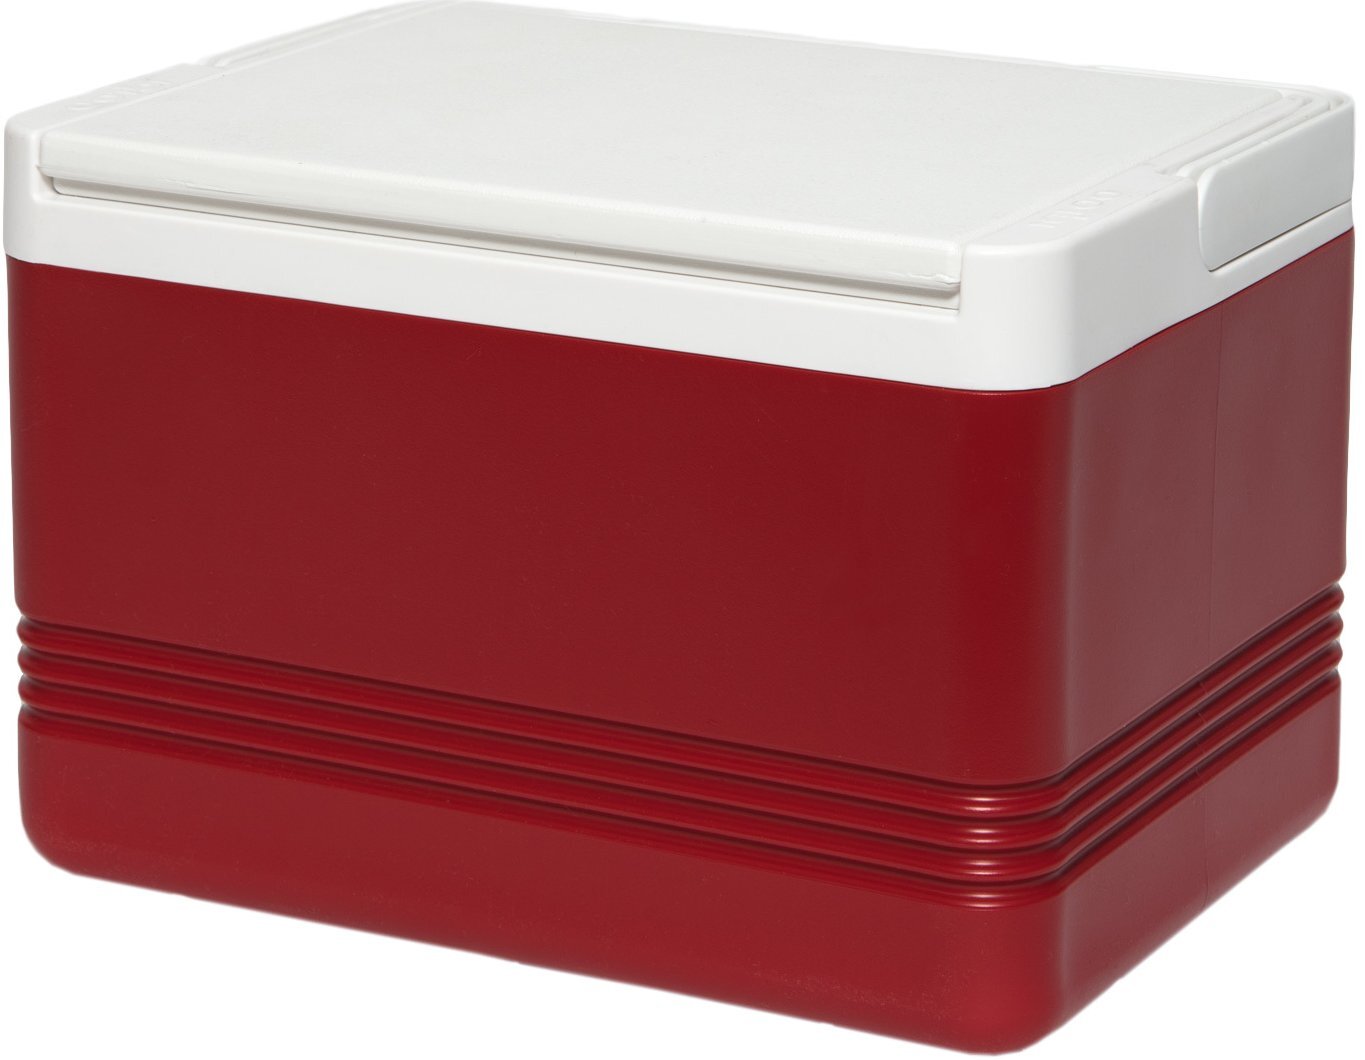 Igloo Legend 12 koelbox rood 9 liter